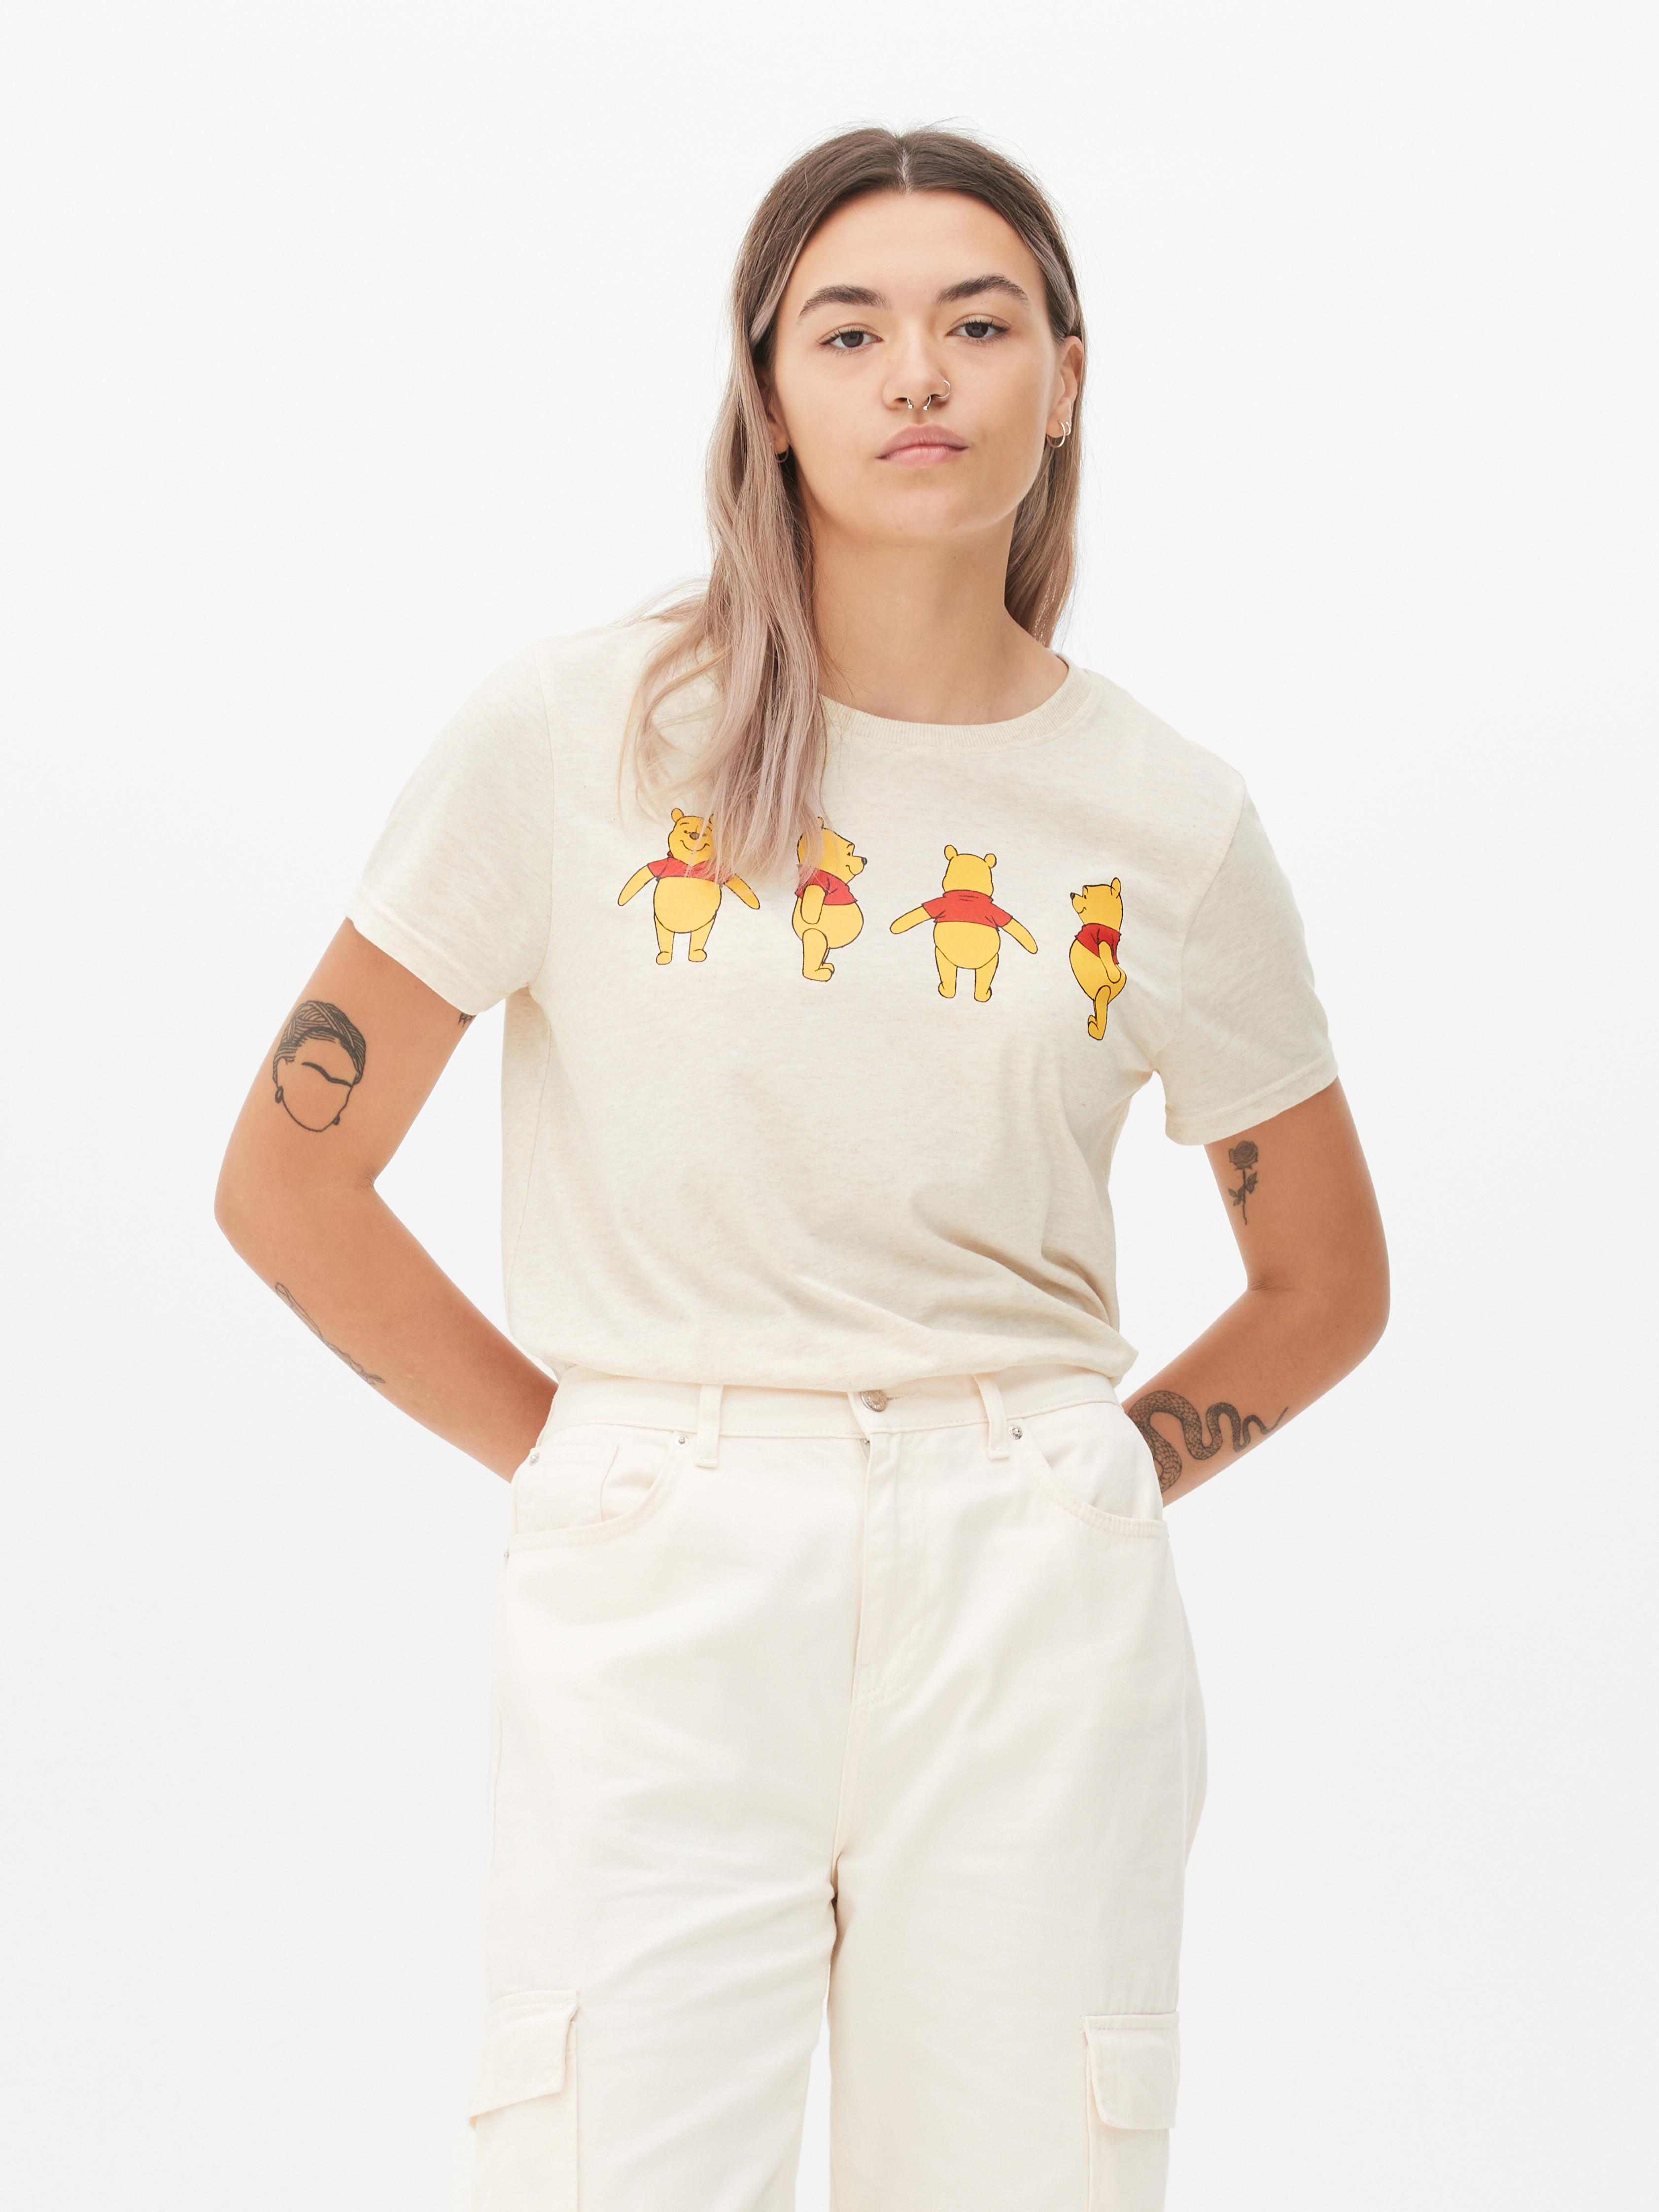 Disney's Winnie the Pooh T-shirt